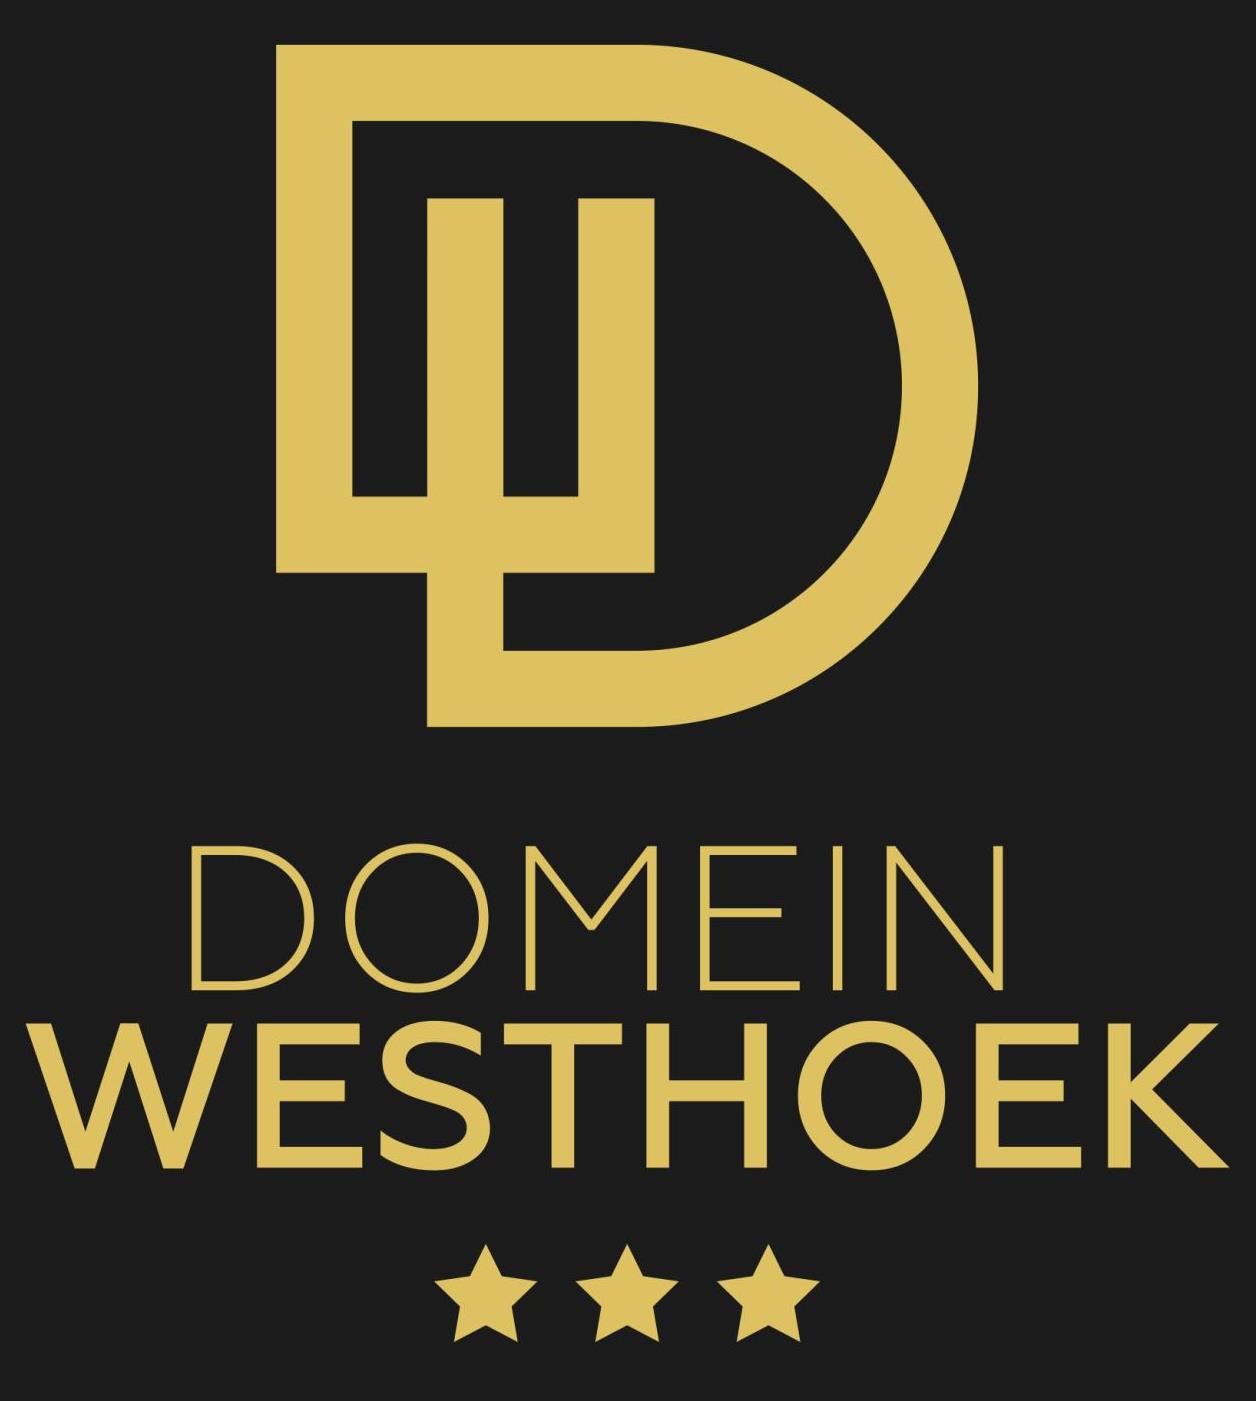 Domein Westhoek